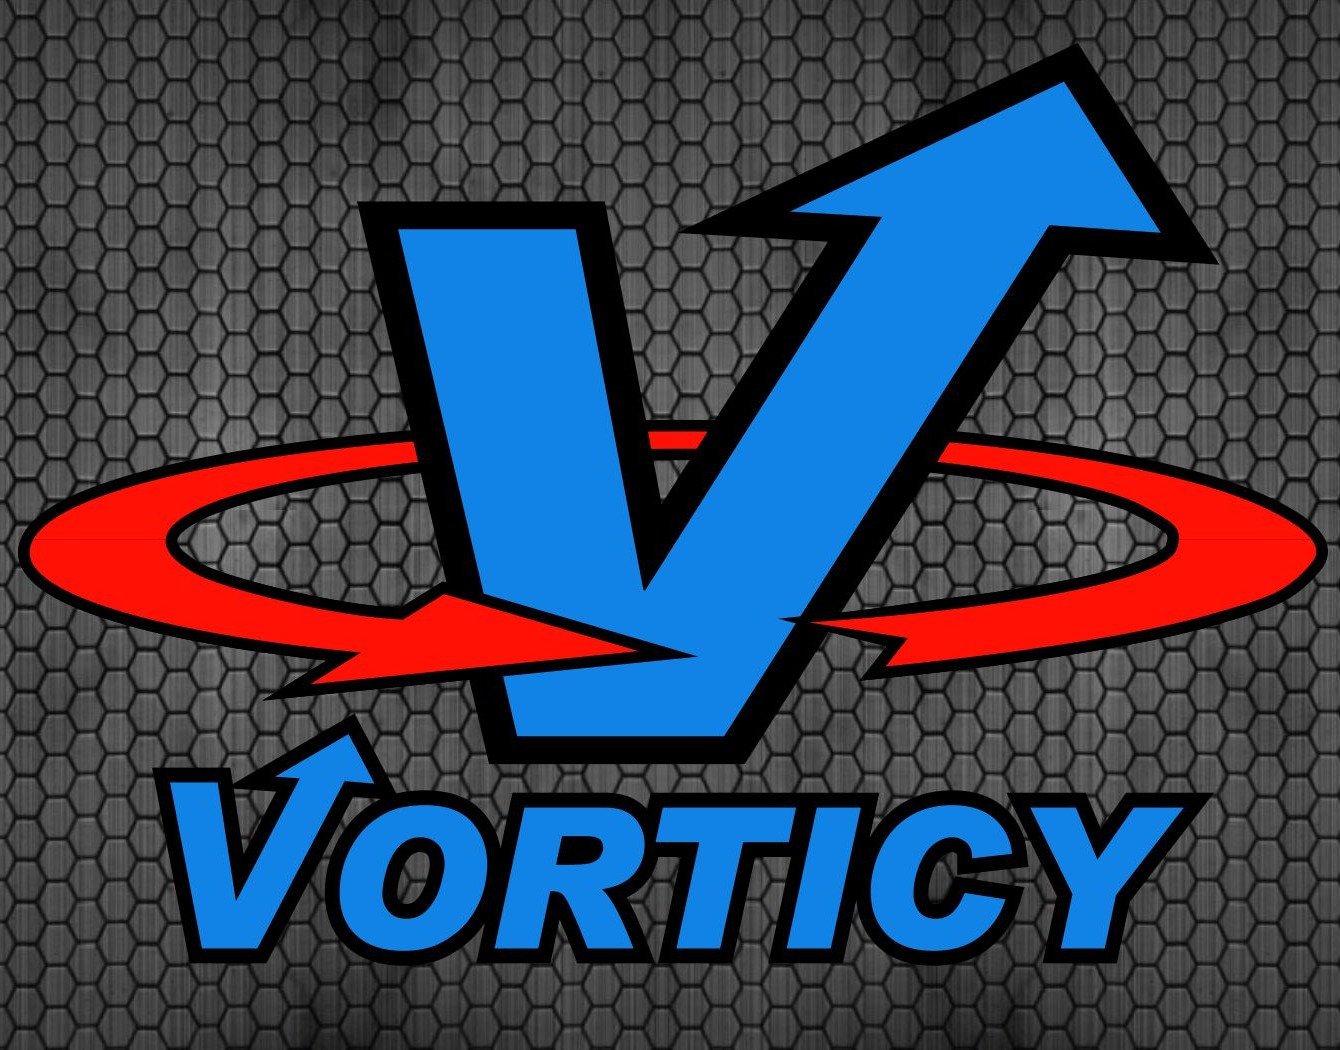 Vorticy Inc